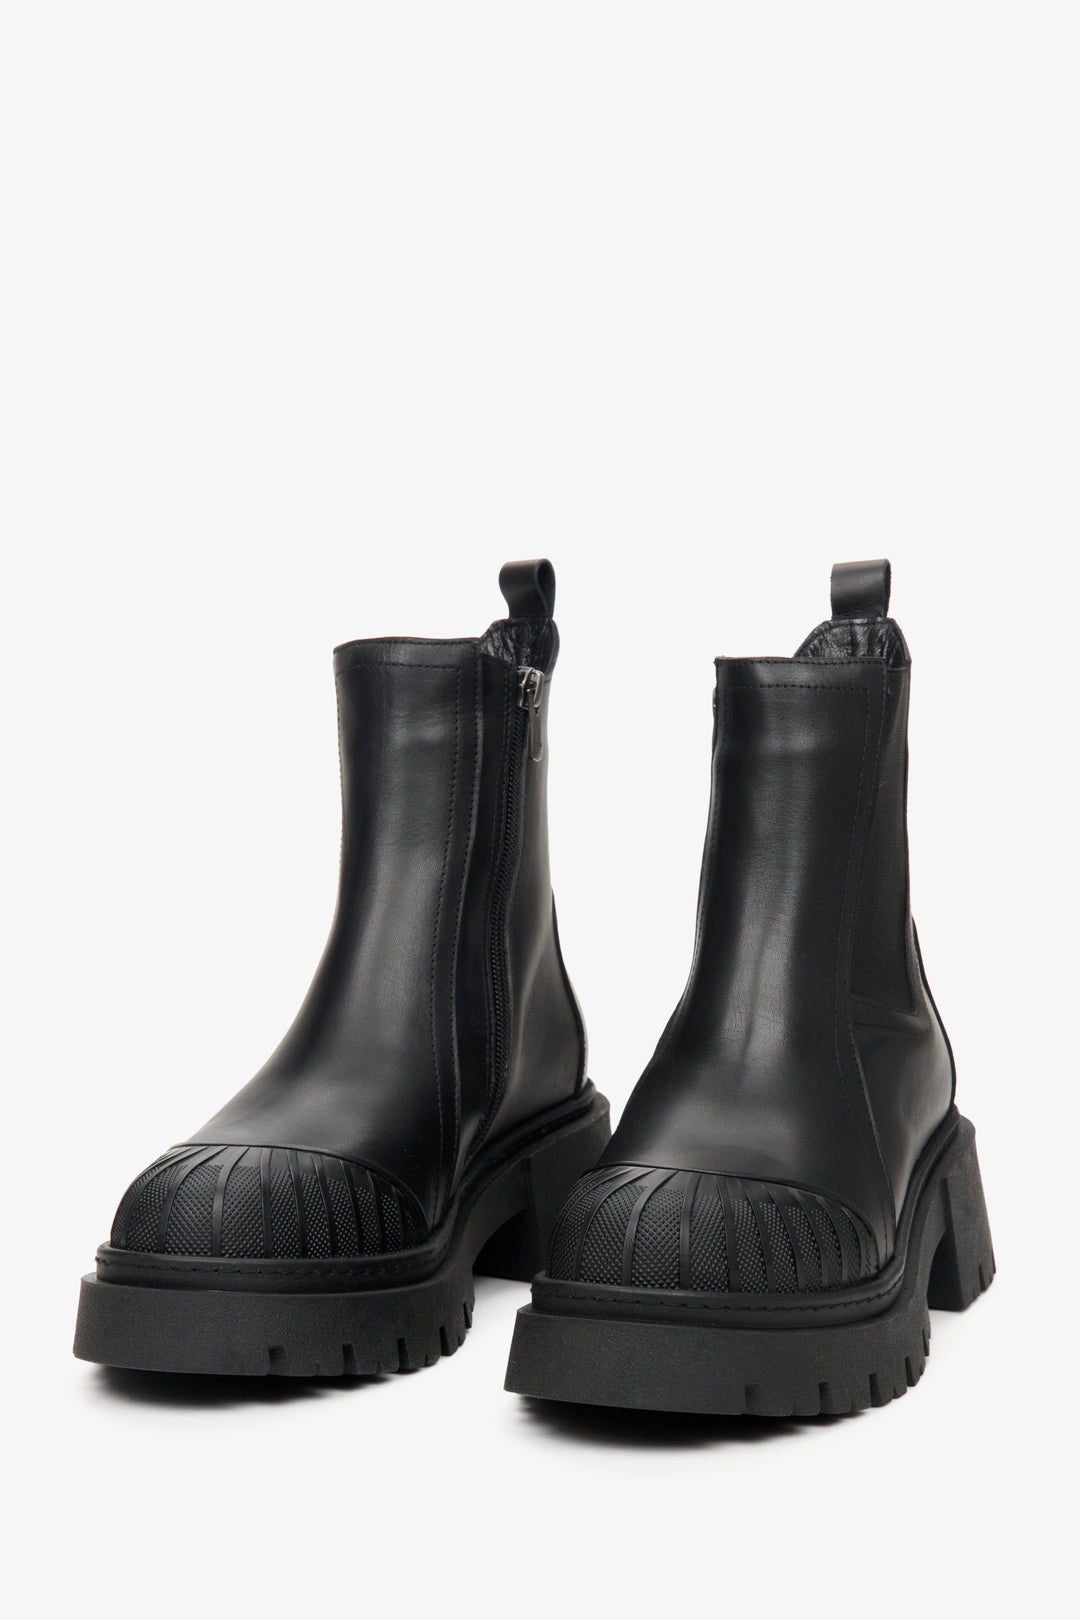 Workery damskie czarne ze skóry naturalnej Estro w kolorze czarnym - zbliżenie na linię palców butów.